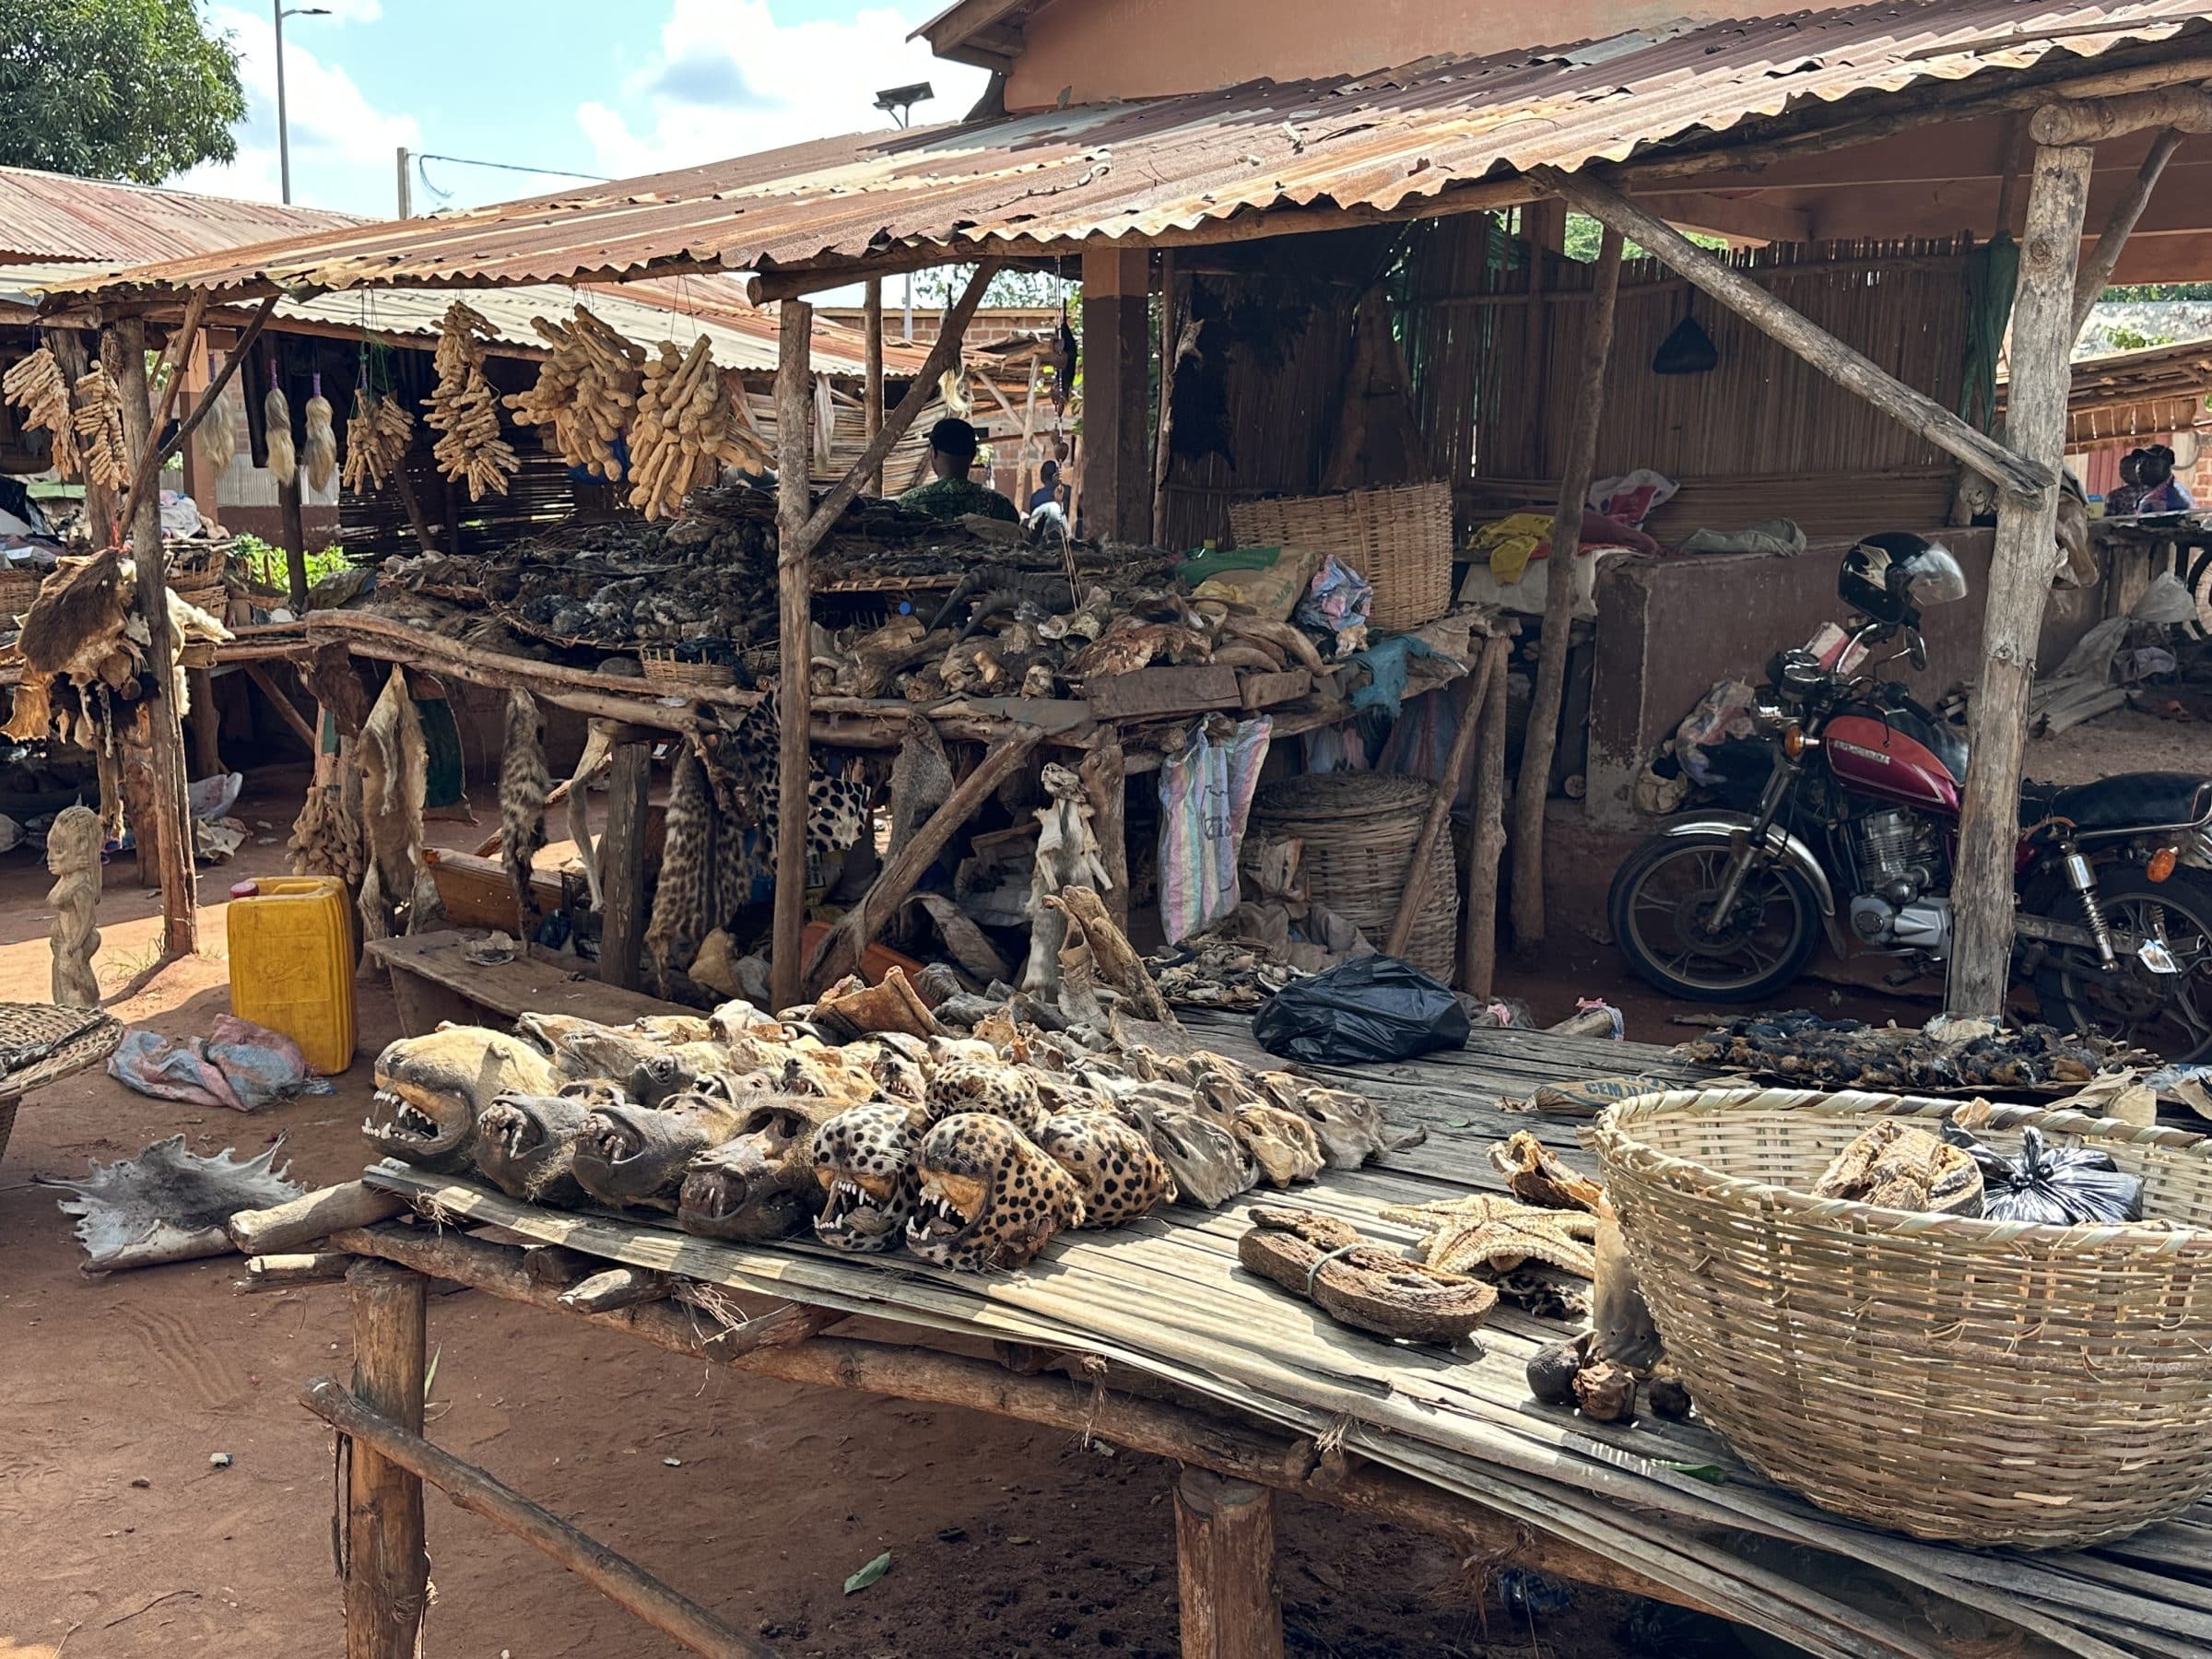 Fetisch markt | Overlanden in Benin